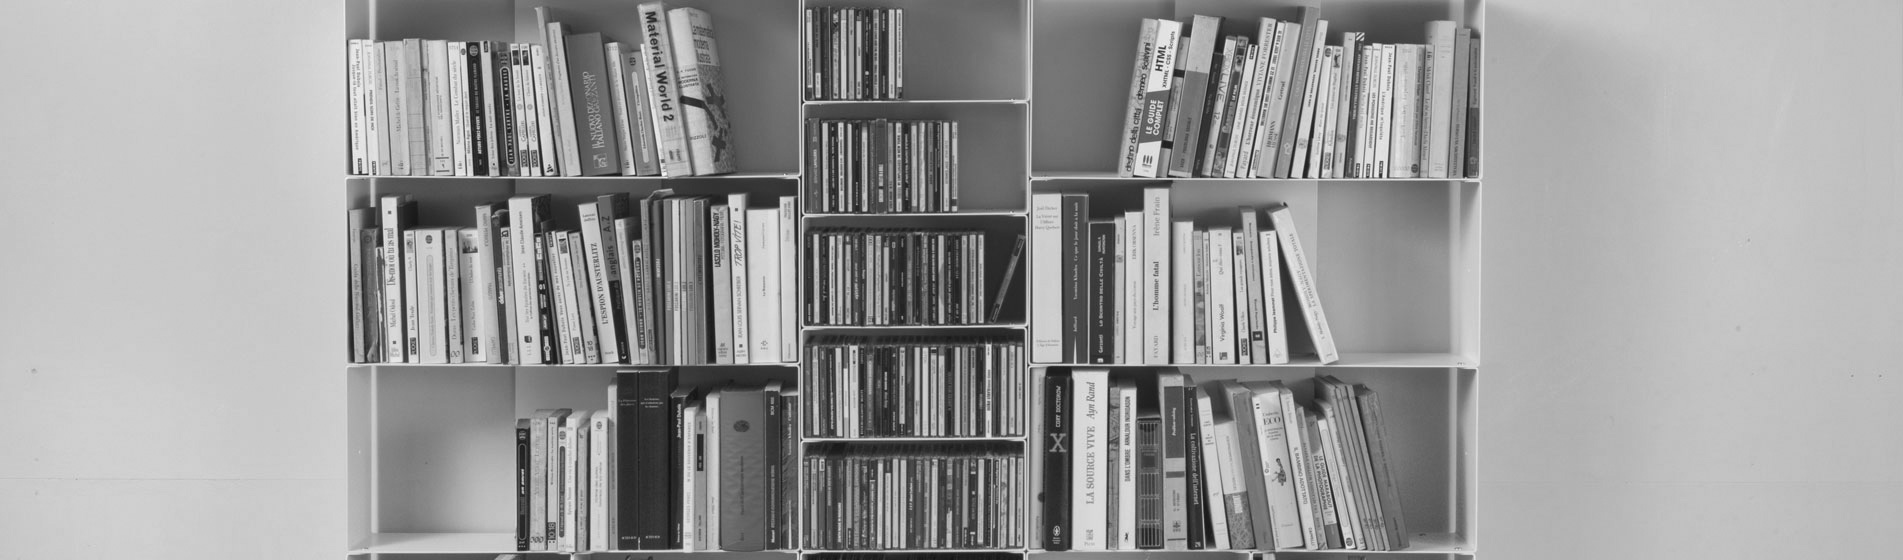 Rangement bibliothèque grise